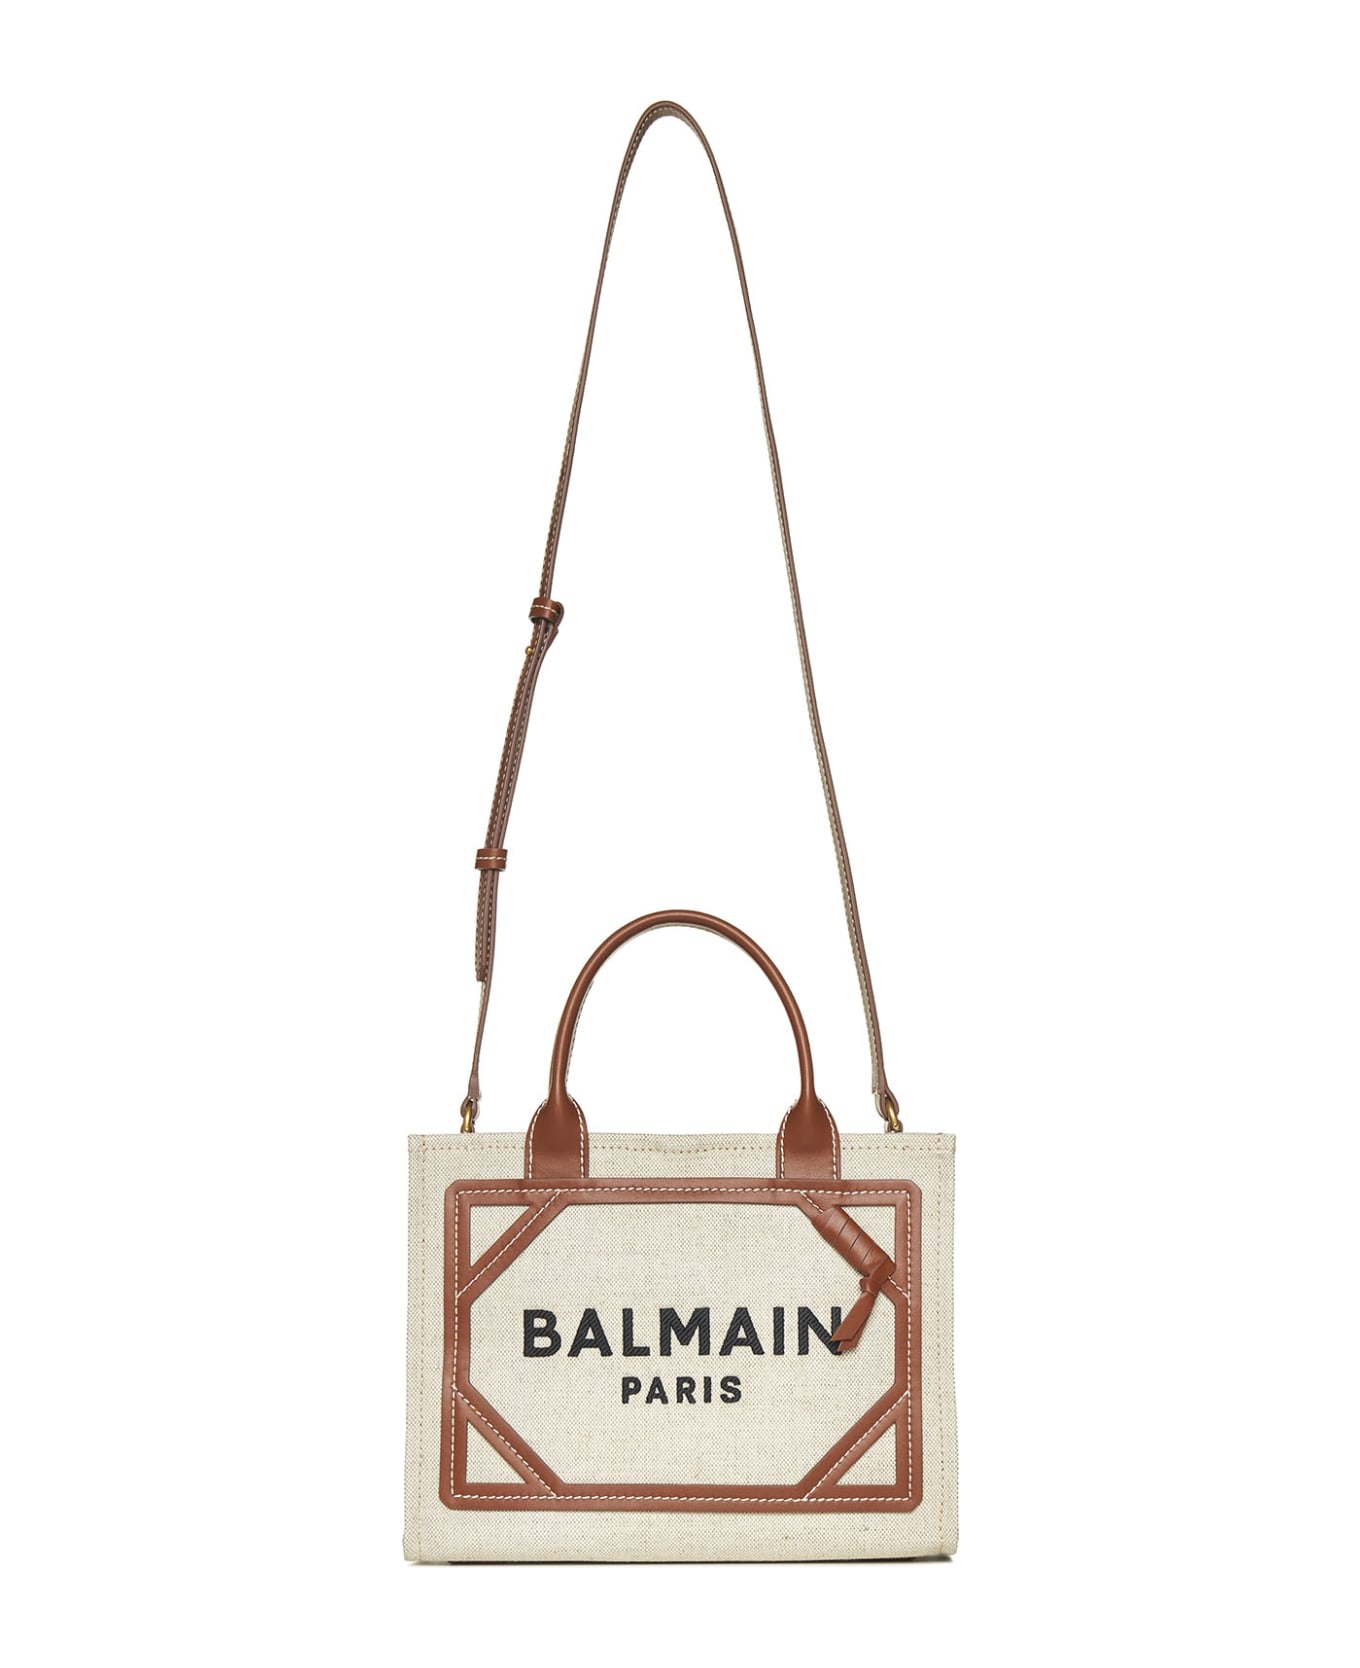 Balmain B-army Small Shopper Bag - Cream トートバッグ